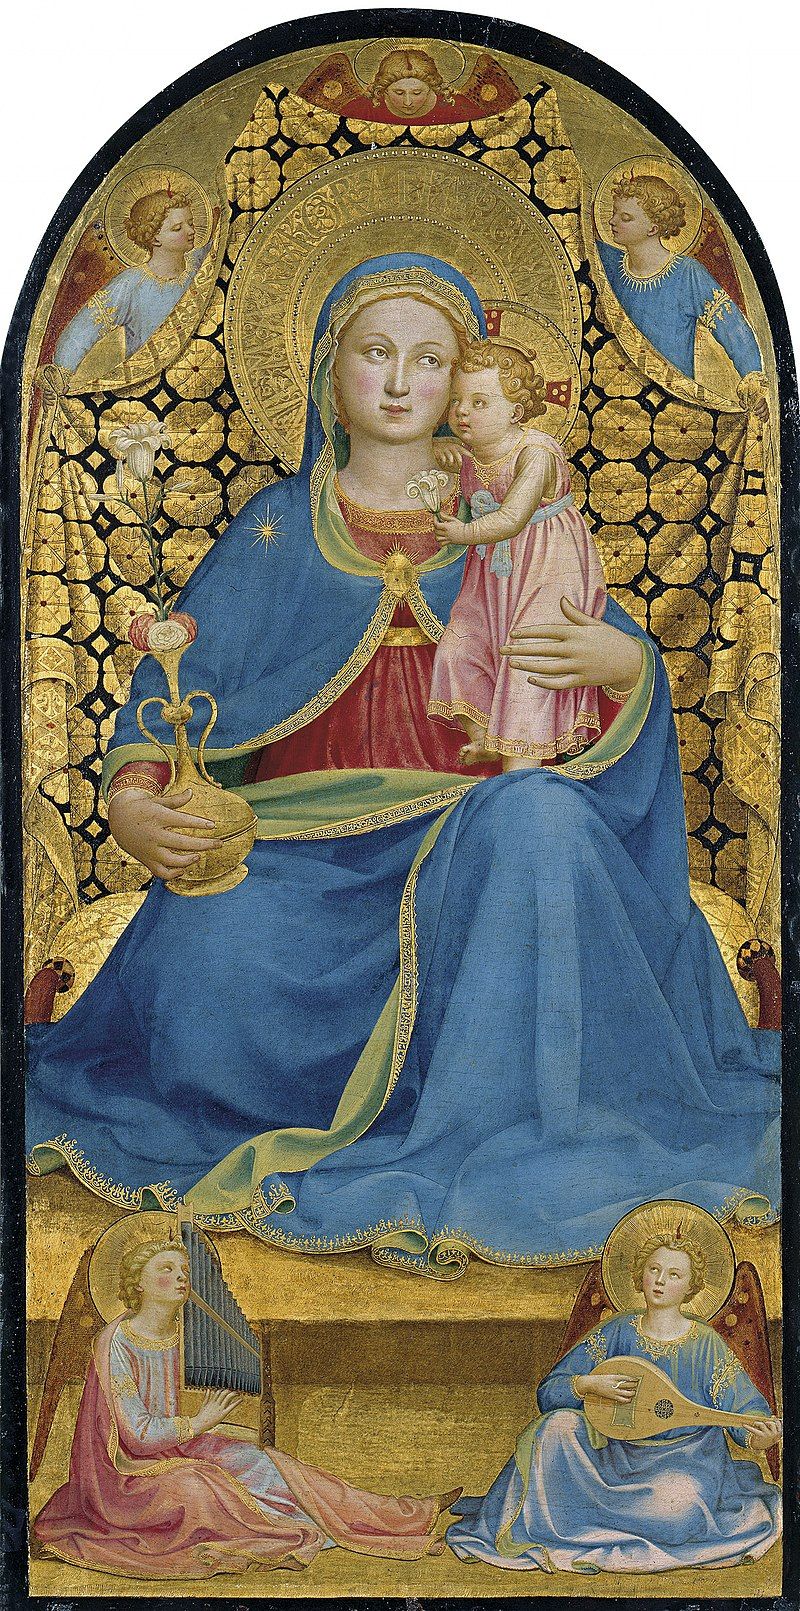  La Virgen de la Humildad, de Fra Angelico. Foto: Wikipedia